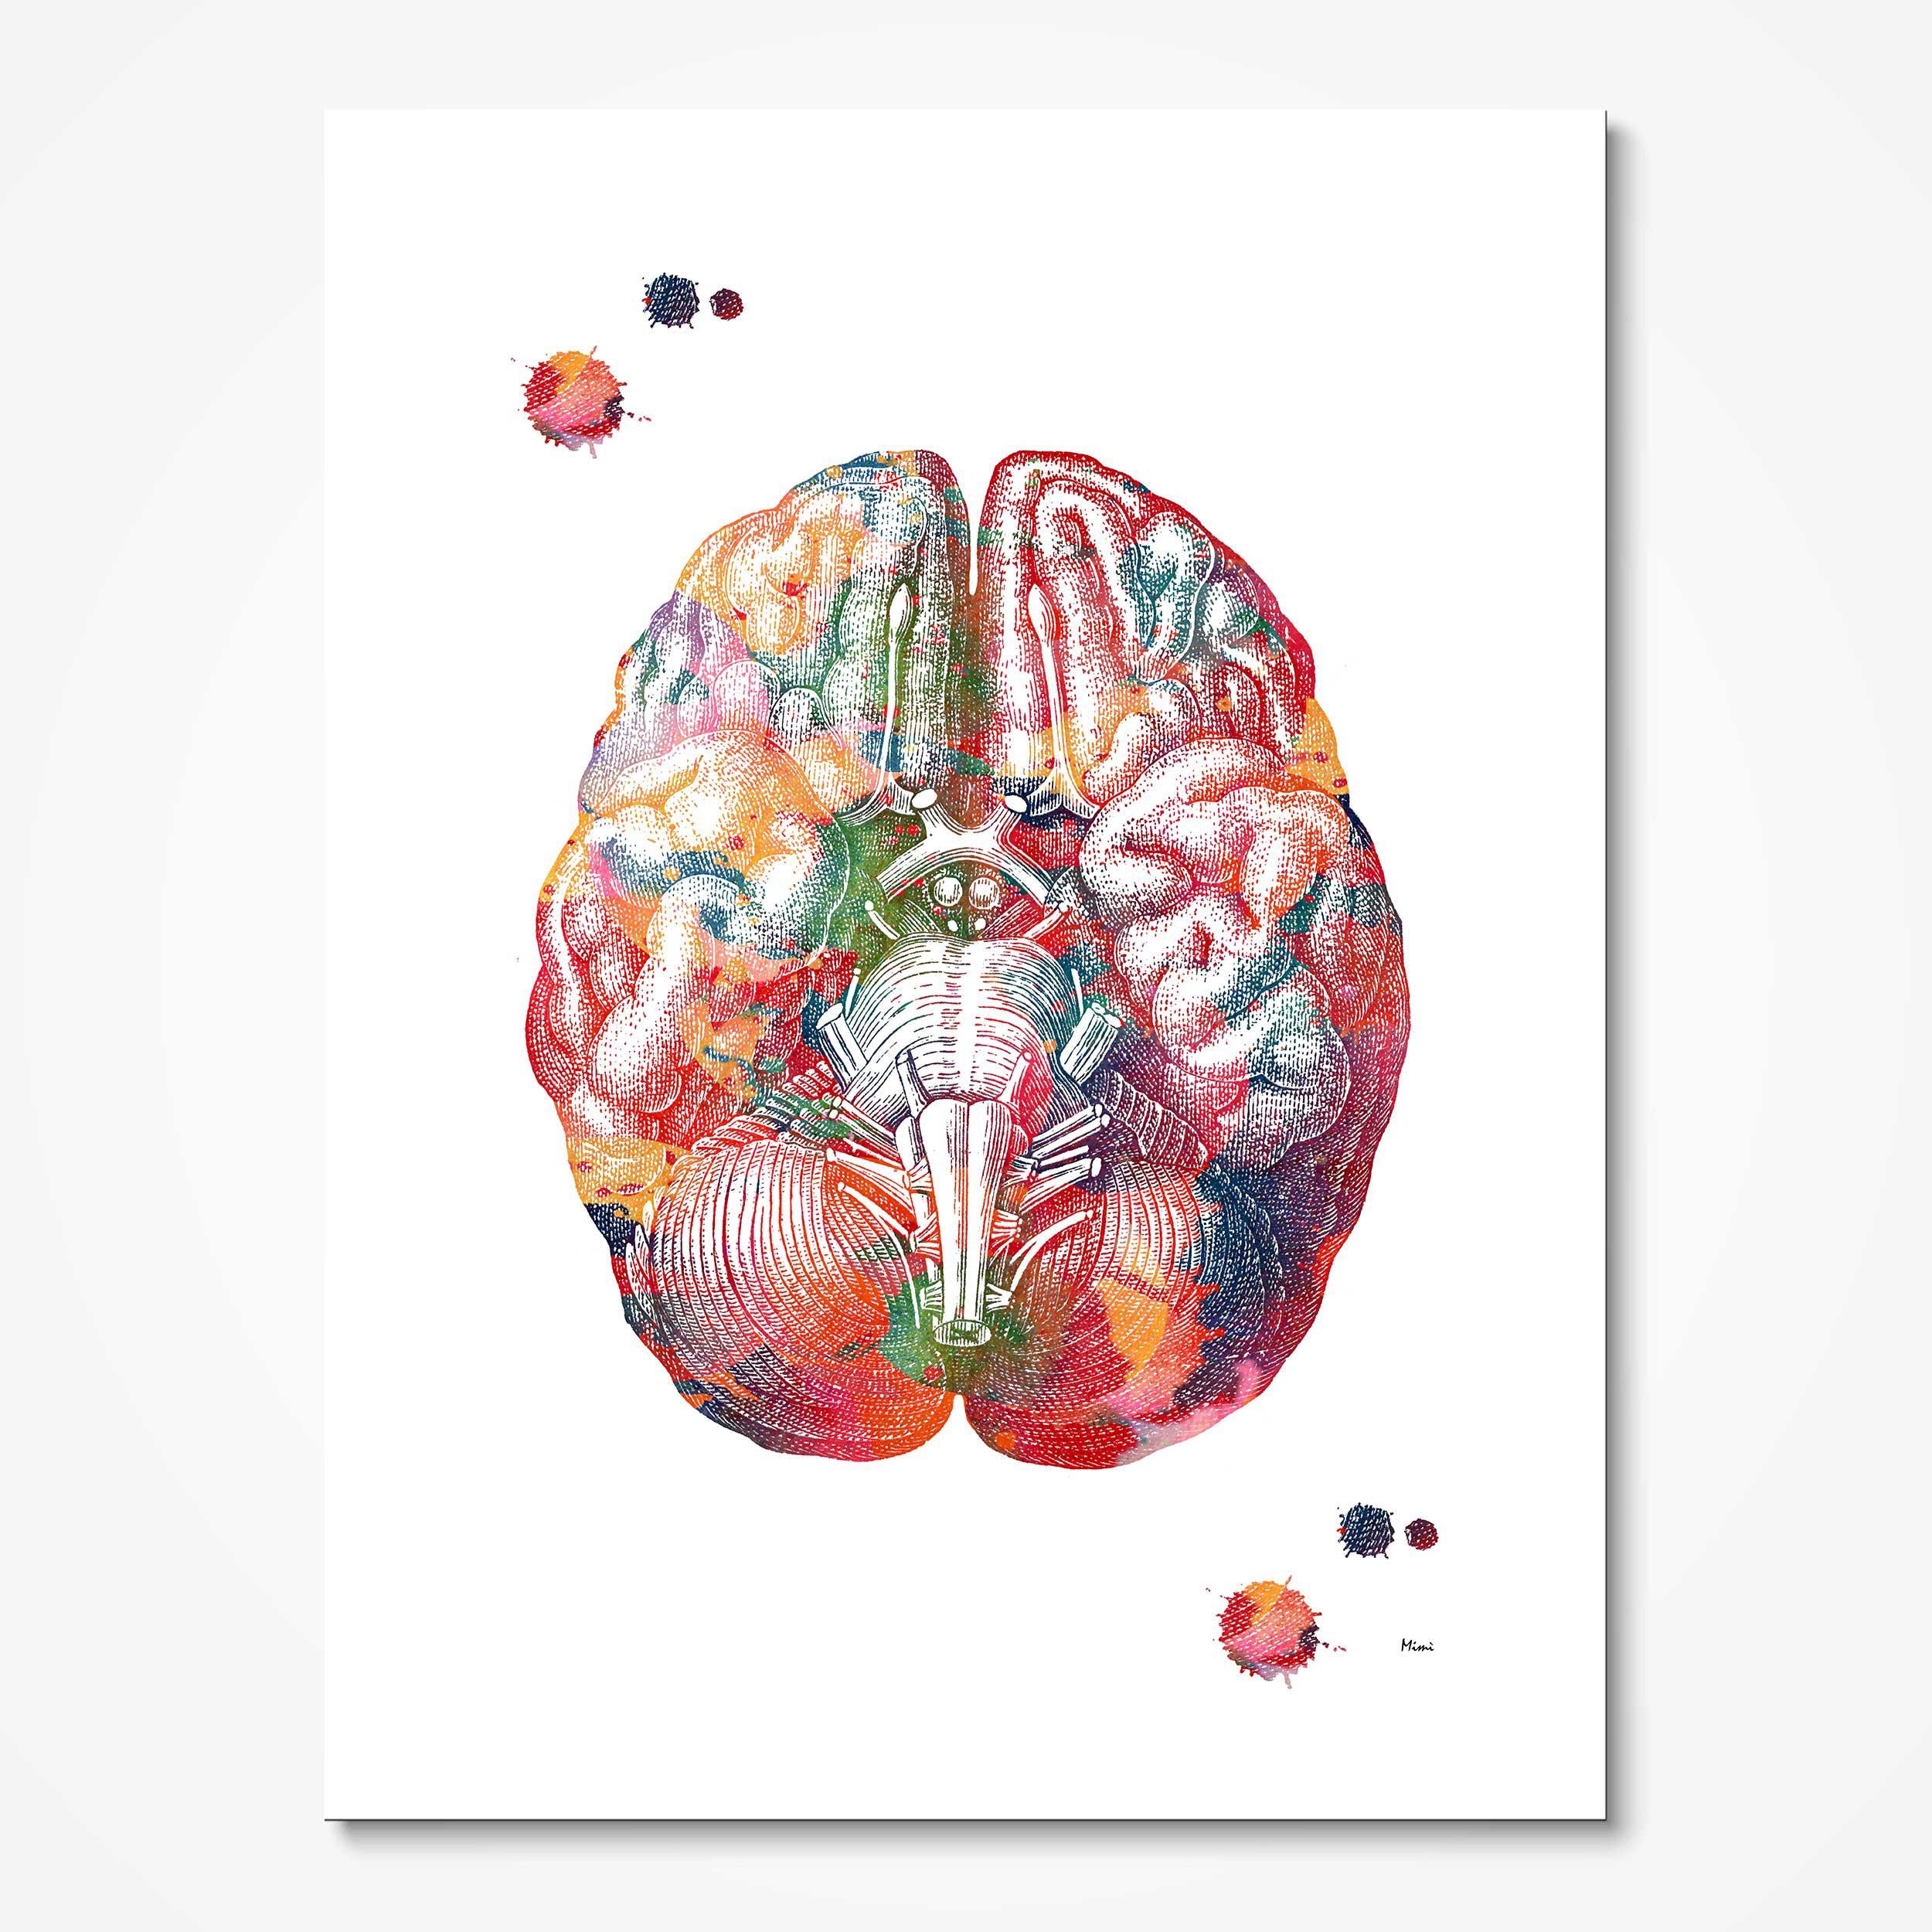 neuro human brain